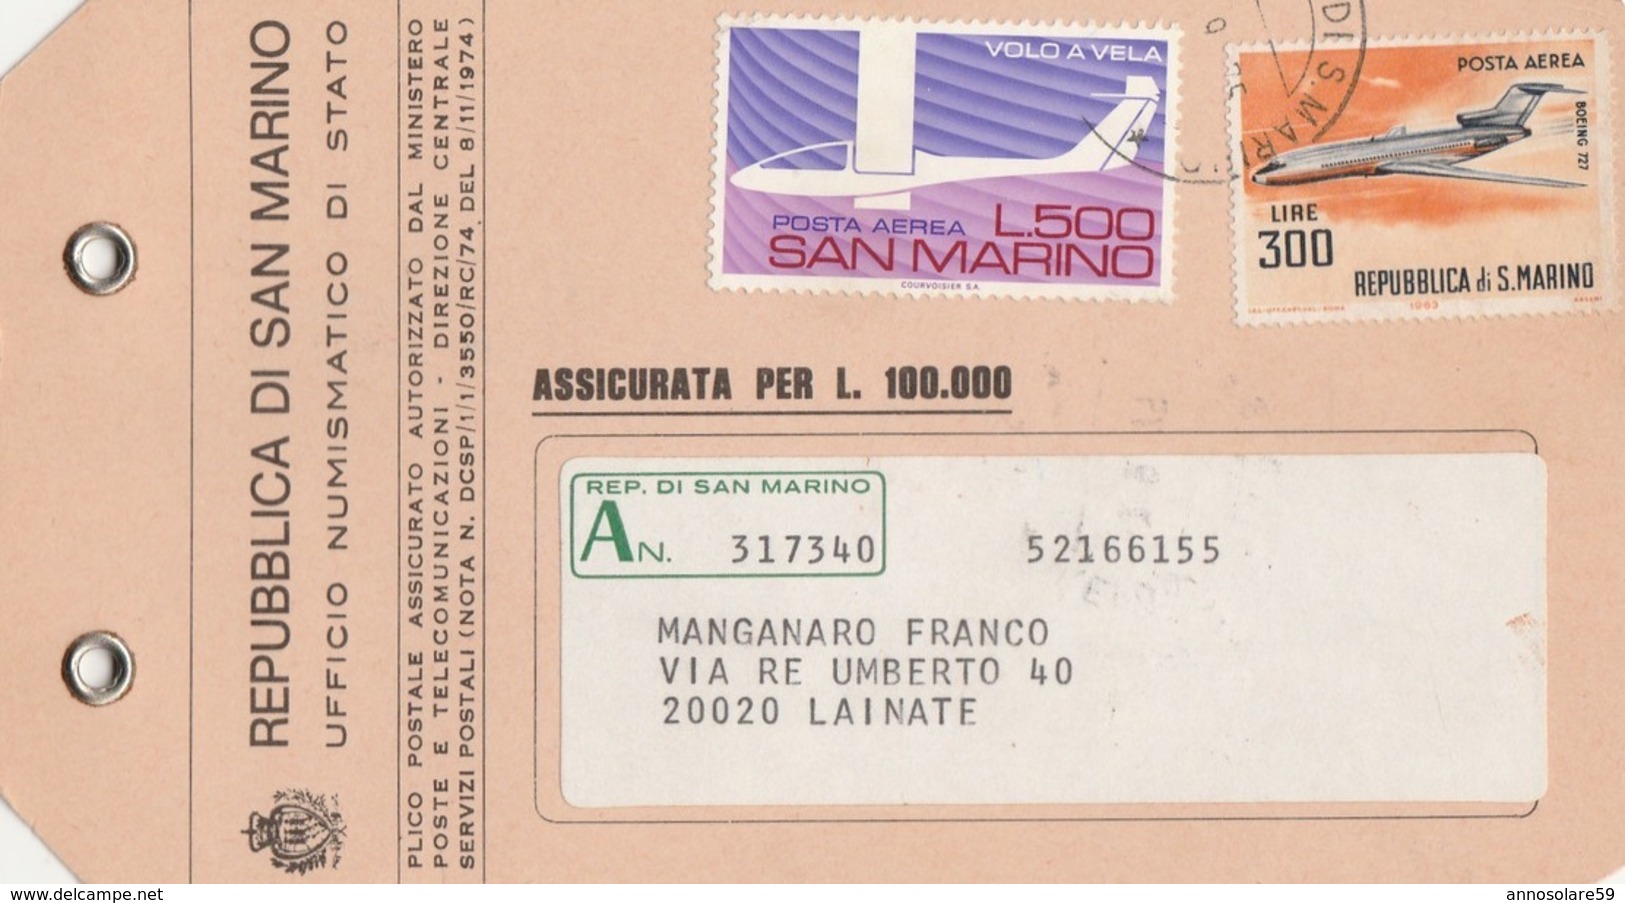 AIRPLANES - SAN MARINO - STORIA POSTALE - ETICHETTA PLICCO POSTALE - BELLISSIMA 1975 - LEGGI - Altri Modi Di Trasporto